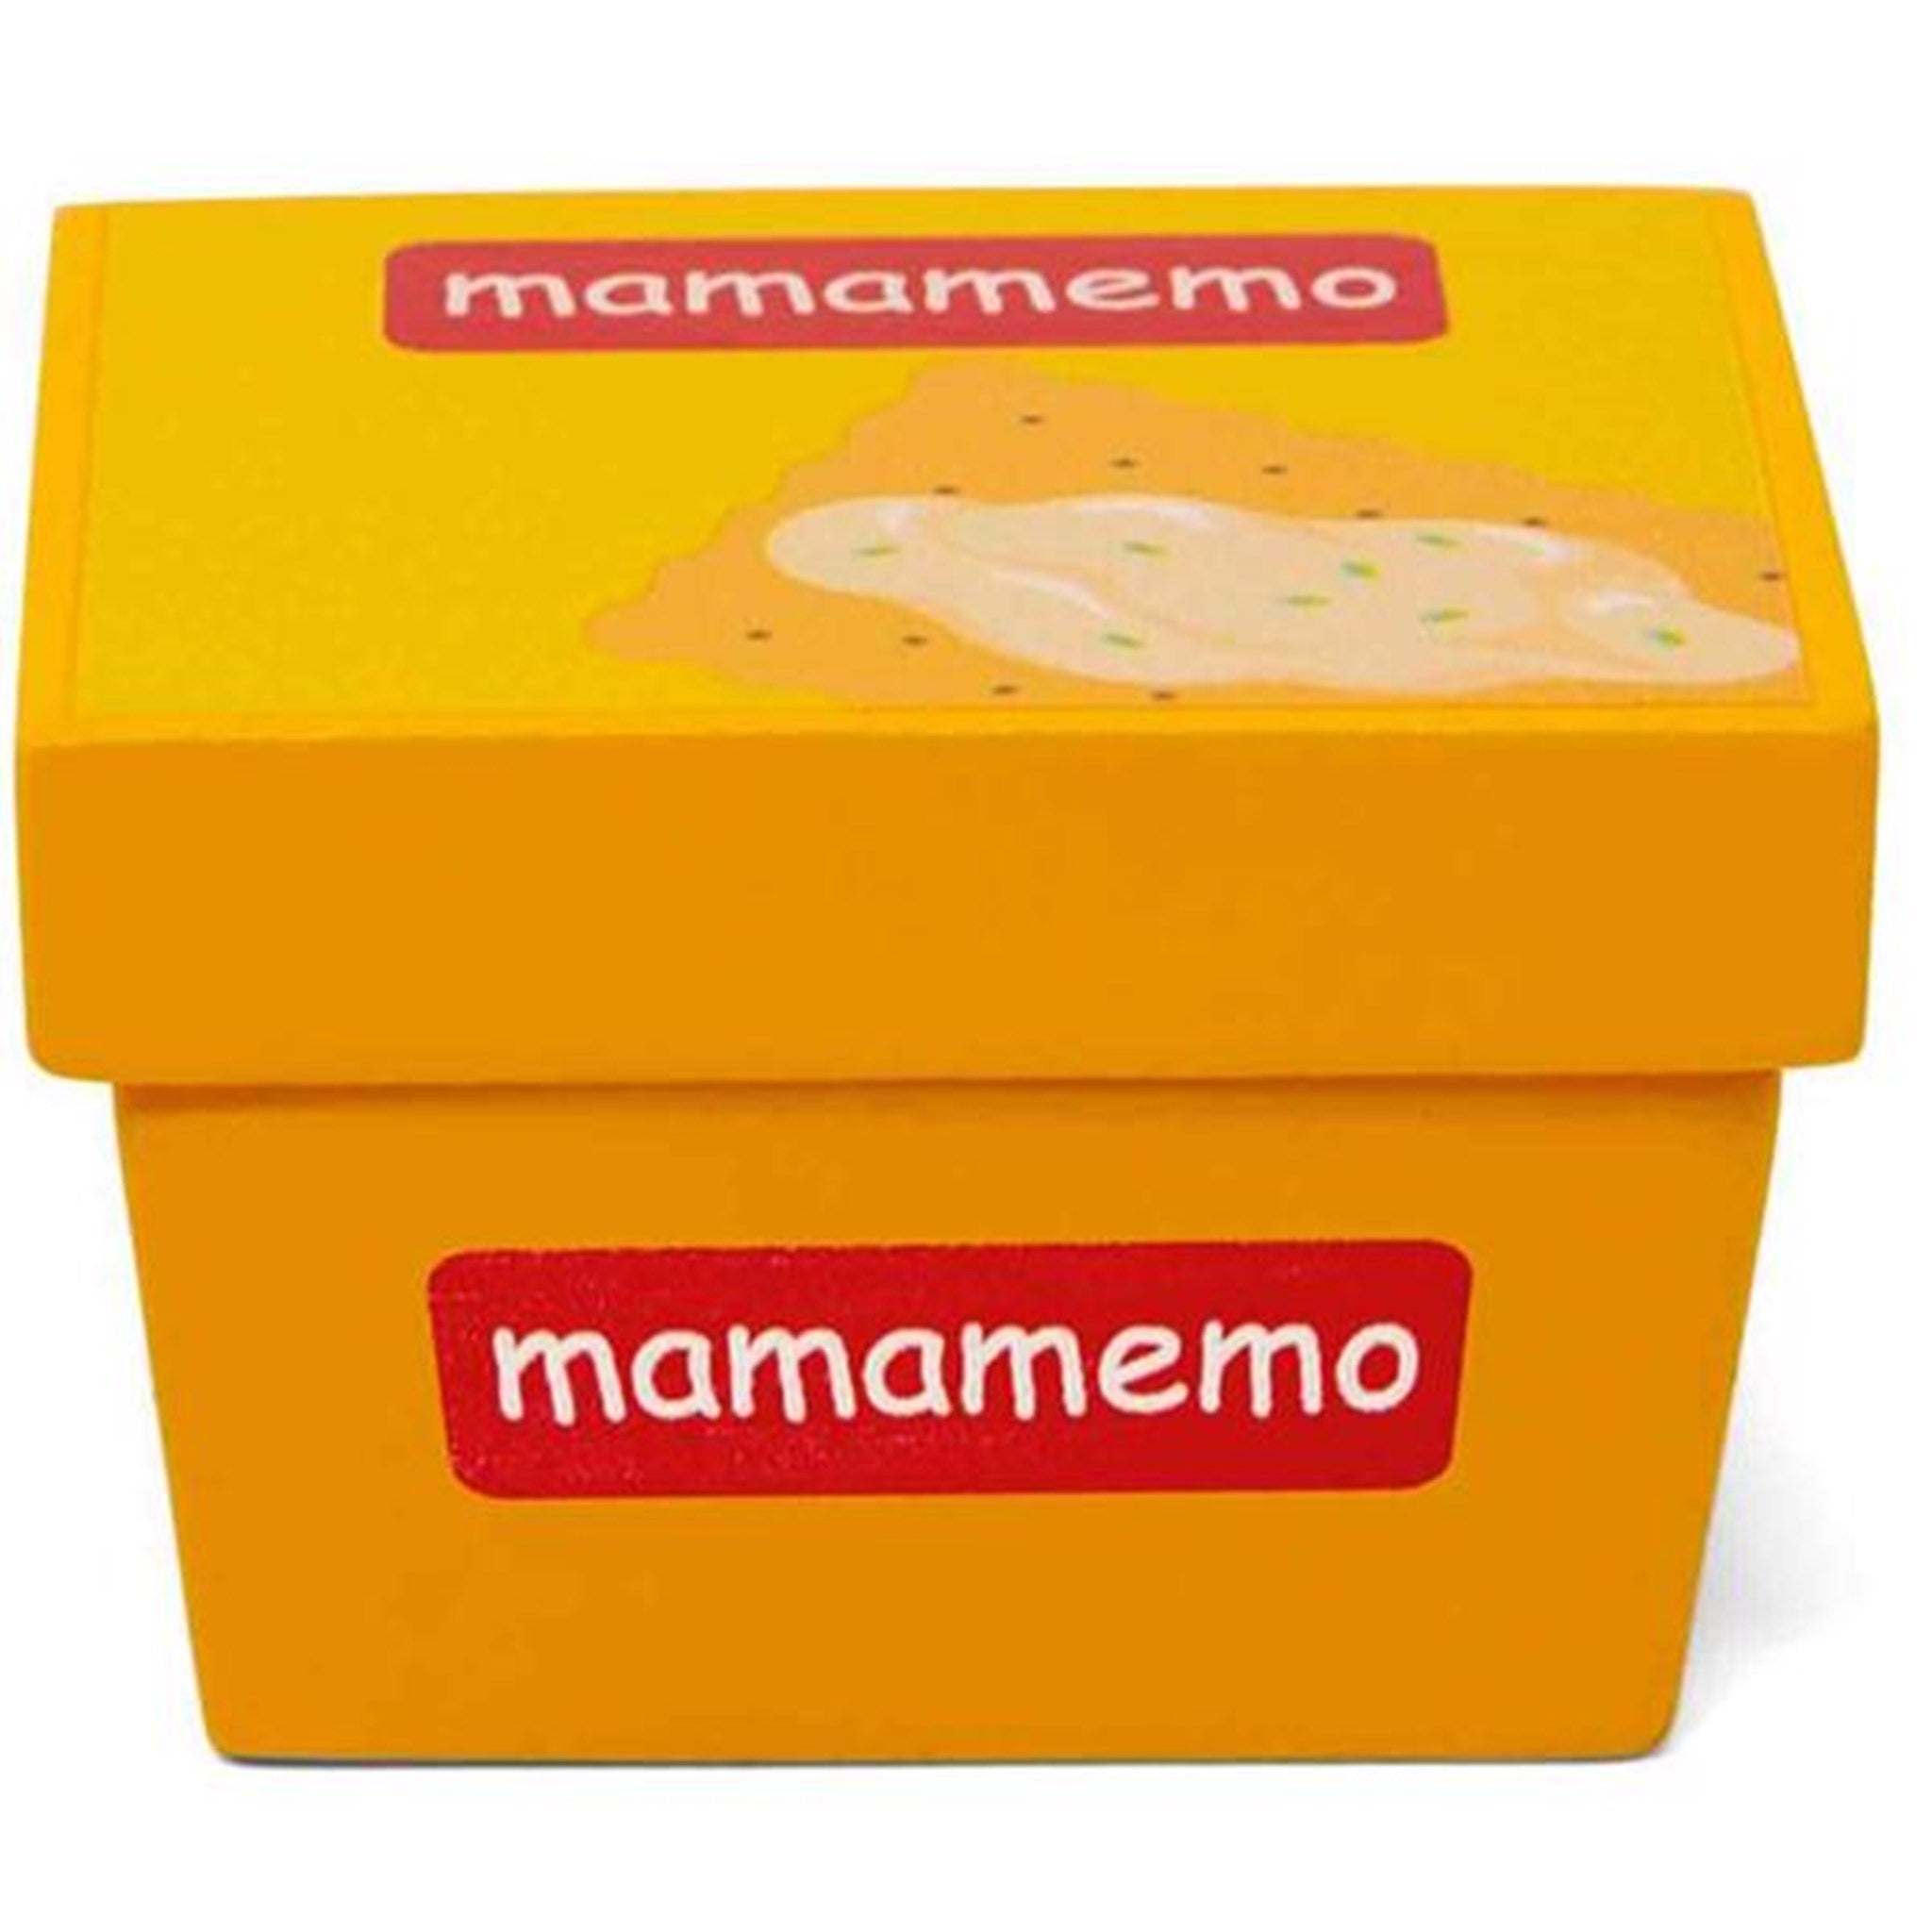 MaMaMemo Cream Cheese